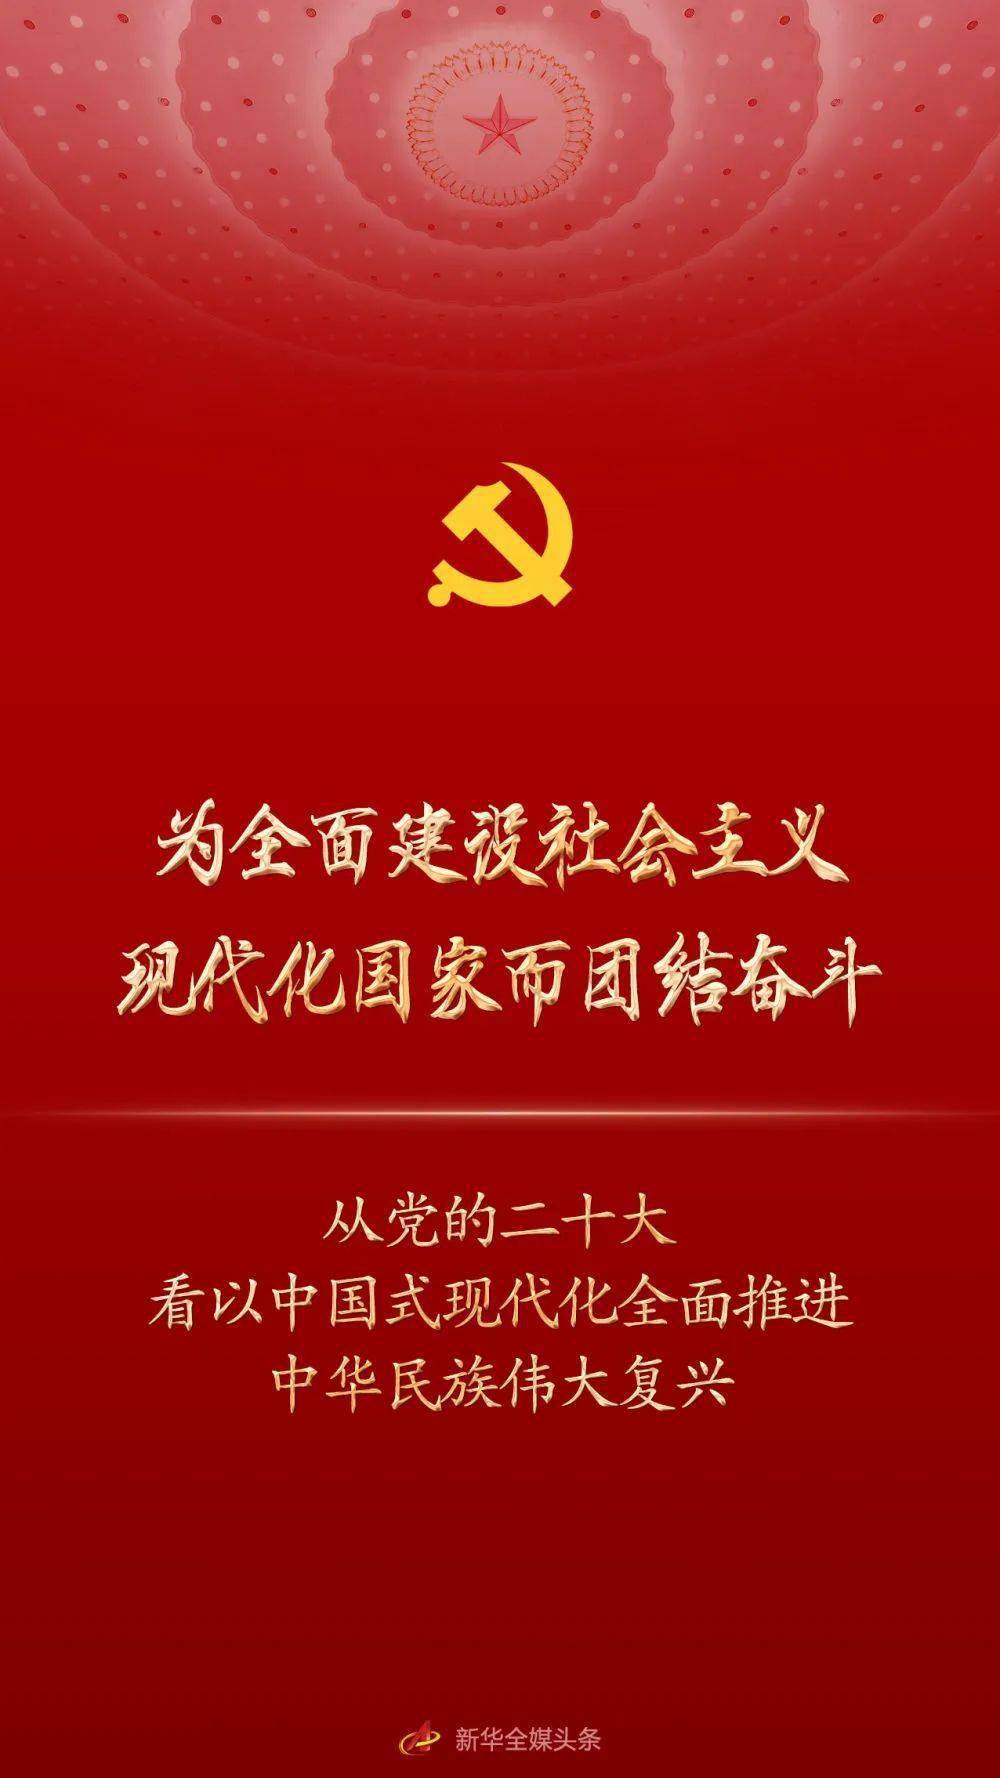 学习二十大精神丨从党的二十大看以中国式现代化全面推进中华民族伟大复兴